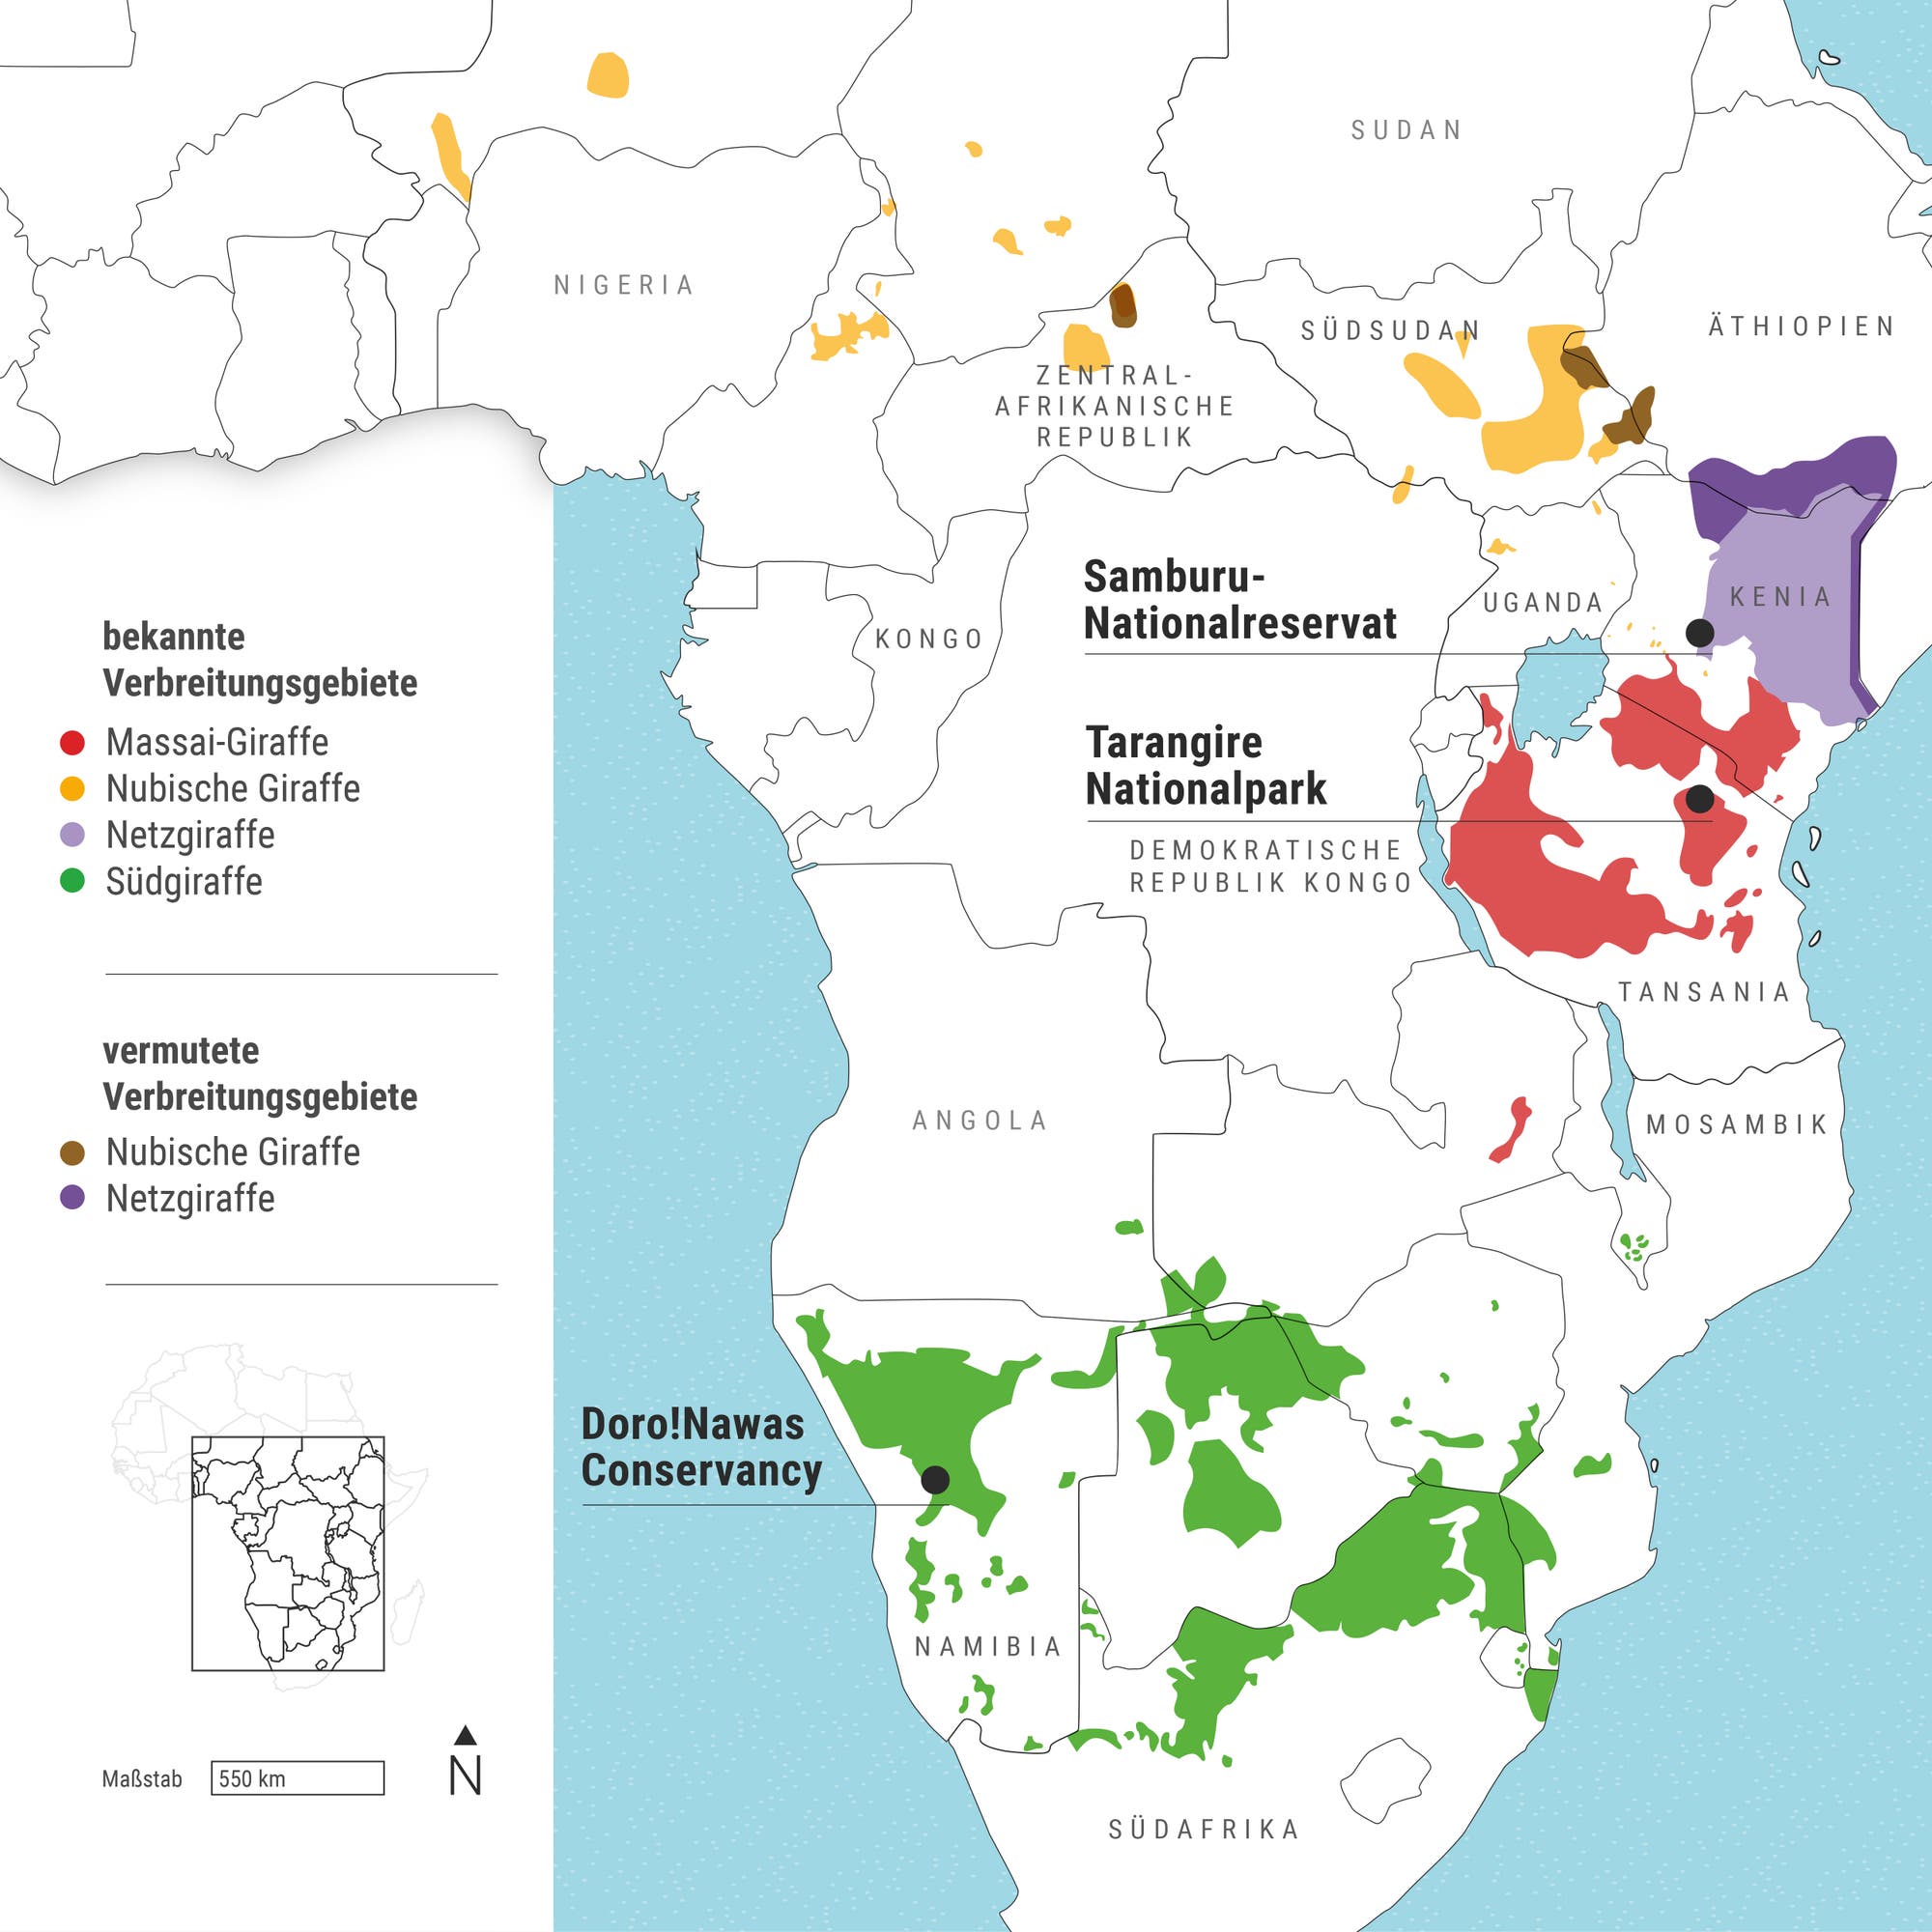 Die Karte zeigt einen stark zerstückelten Lebensraum der Giraffen. Vor allem in Zentral- und Ostafrika ist er im 20.&nbsp;Jahrhundert massiv geschrumpft. Die hier vorgenommene Untergliederung in vier Giraffenarten wird in der Wissenschaft nicht allgemein akzeptiert.